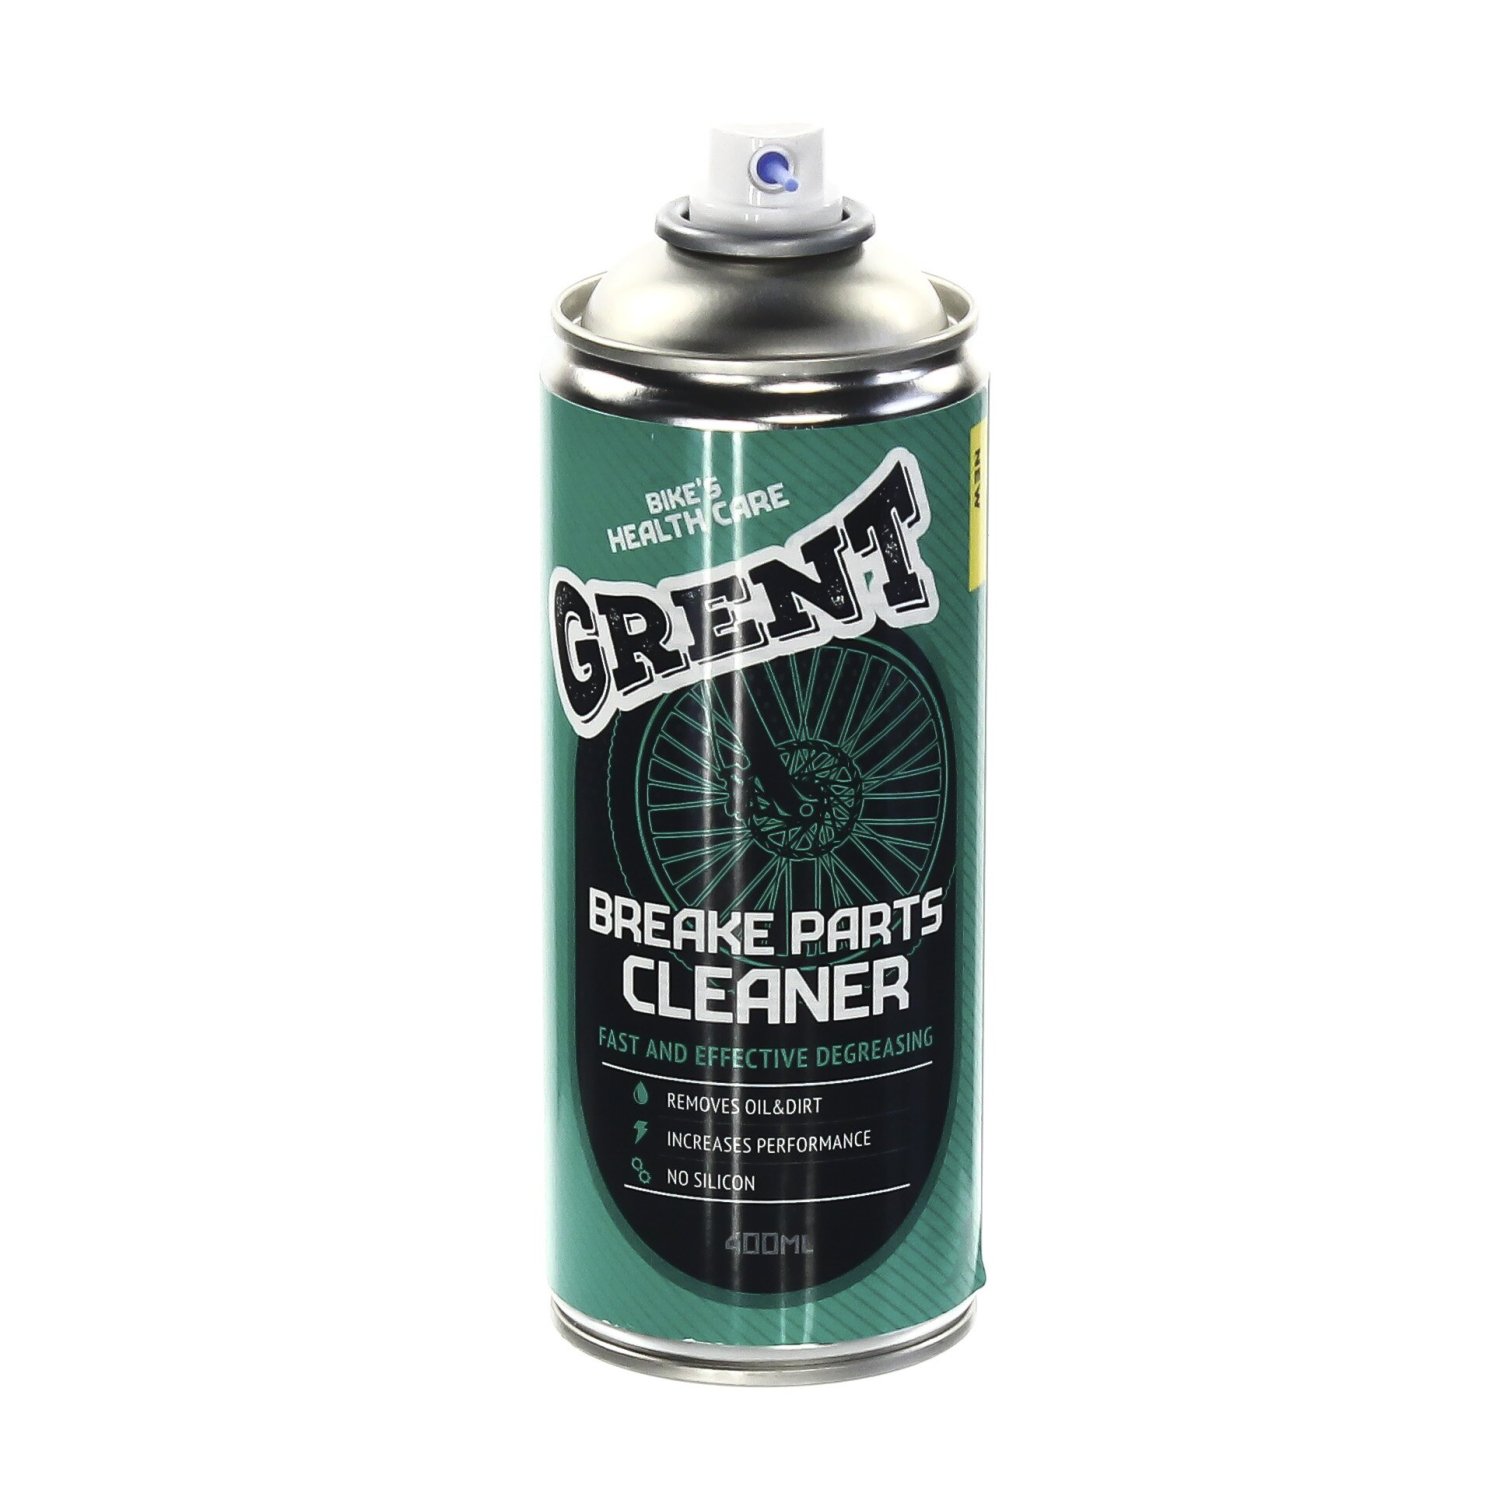 Очиститель тормозов GRENT BREAKE PARTS CLEANER, 520мл, 40523 очиститель тормозных дисков bikeology 200ml